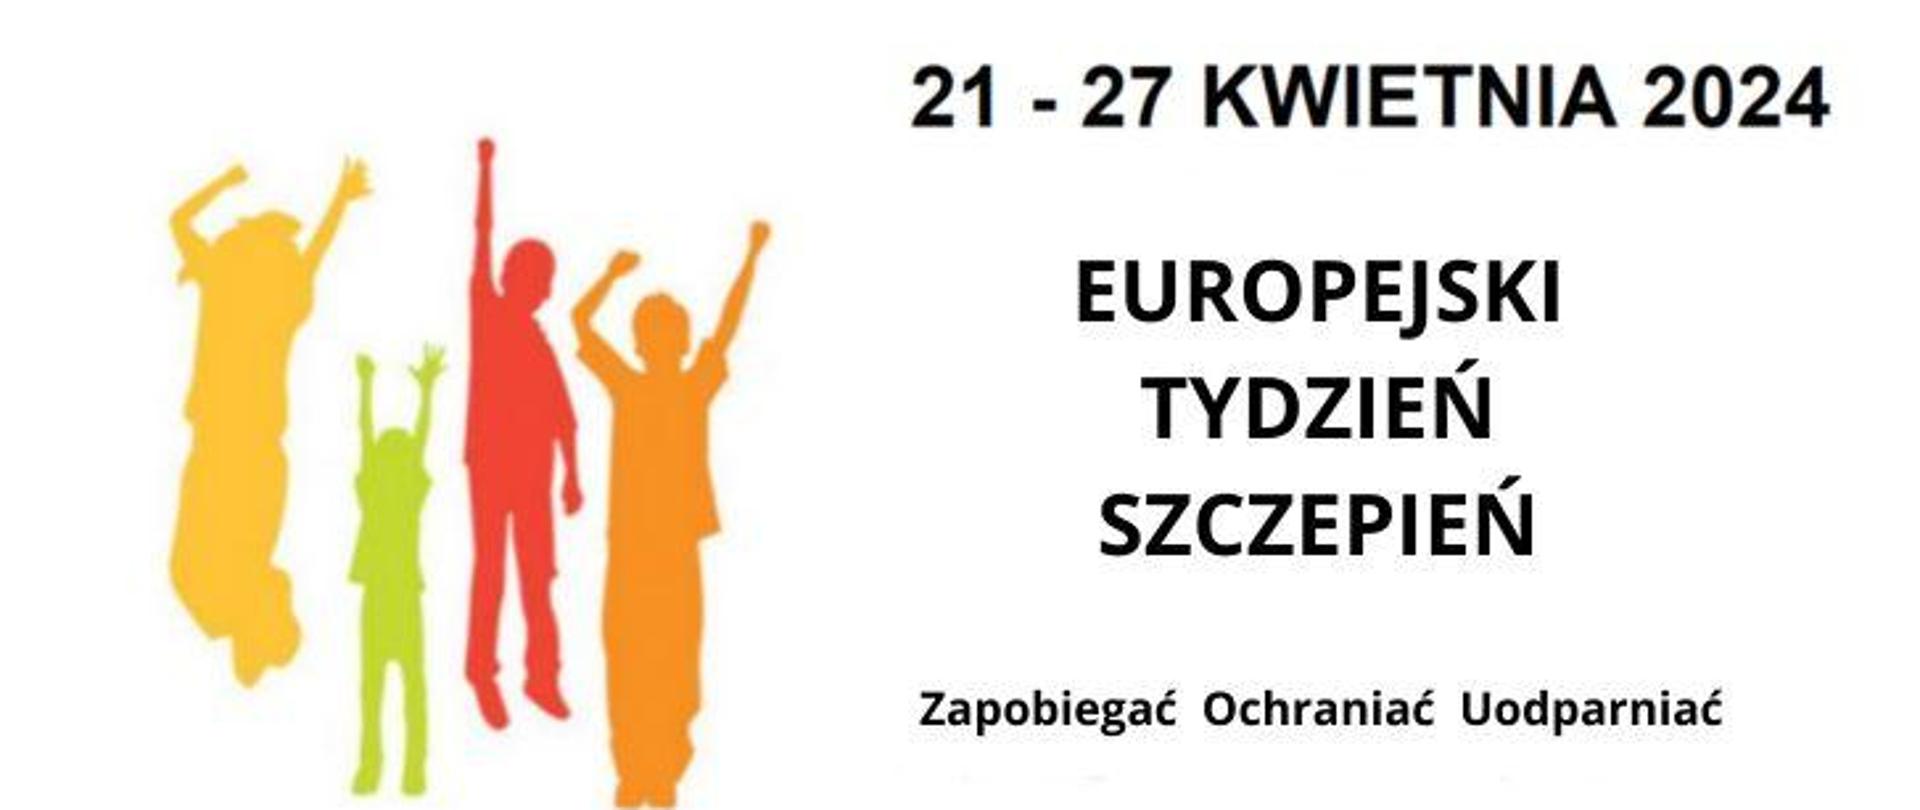 Na białym tle po prawej ciemne napisy "21-27 kwietnia 2024" poniżej "Europejski Tydzień Szczepień" i "zapobiegać ochraniać uodparniać". Po lewej cztery kolorowe sylwetki z podniesionymi rękami.